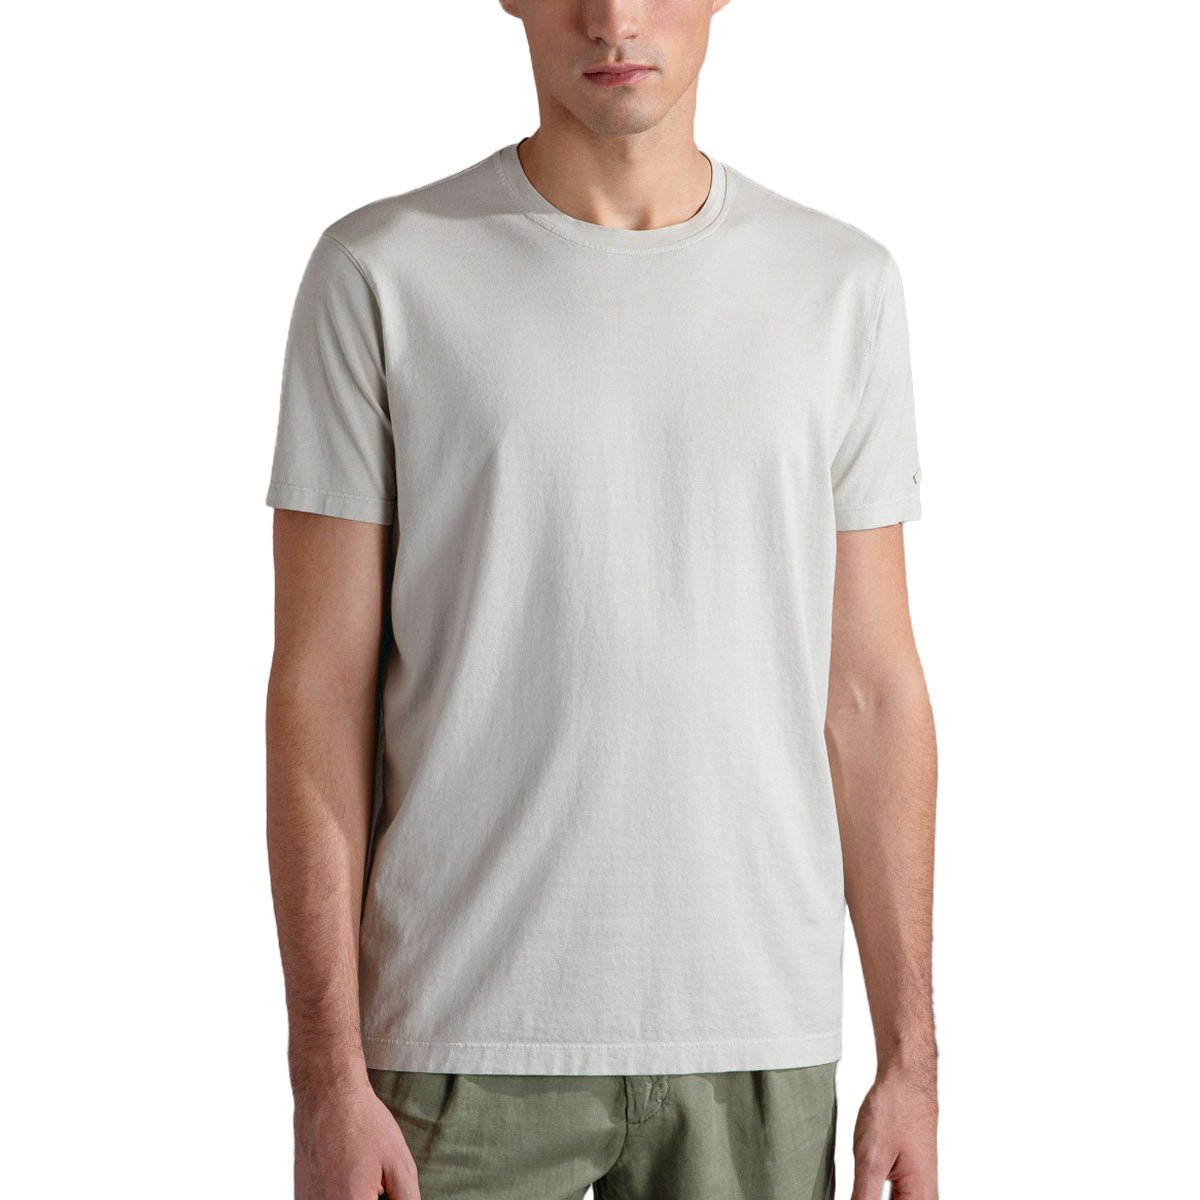 Almond Pure Cotton Jersey T-Shirt TEE SHIRTS Paul & Shark   